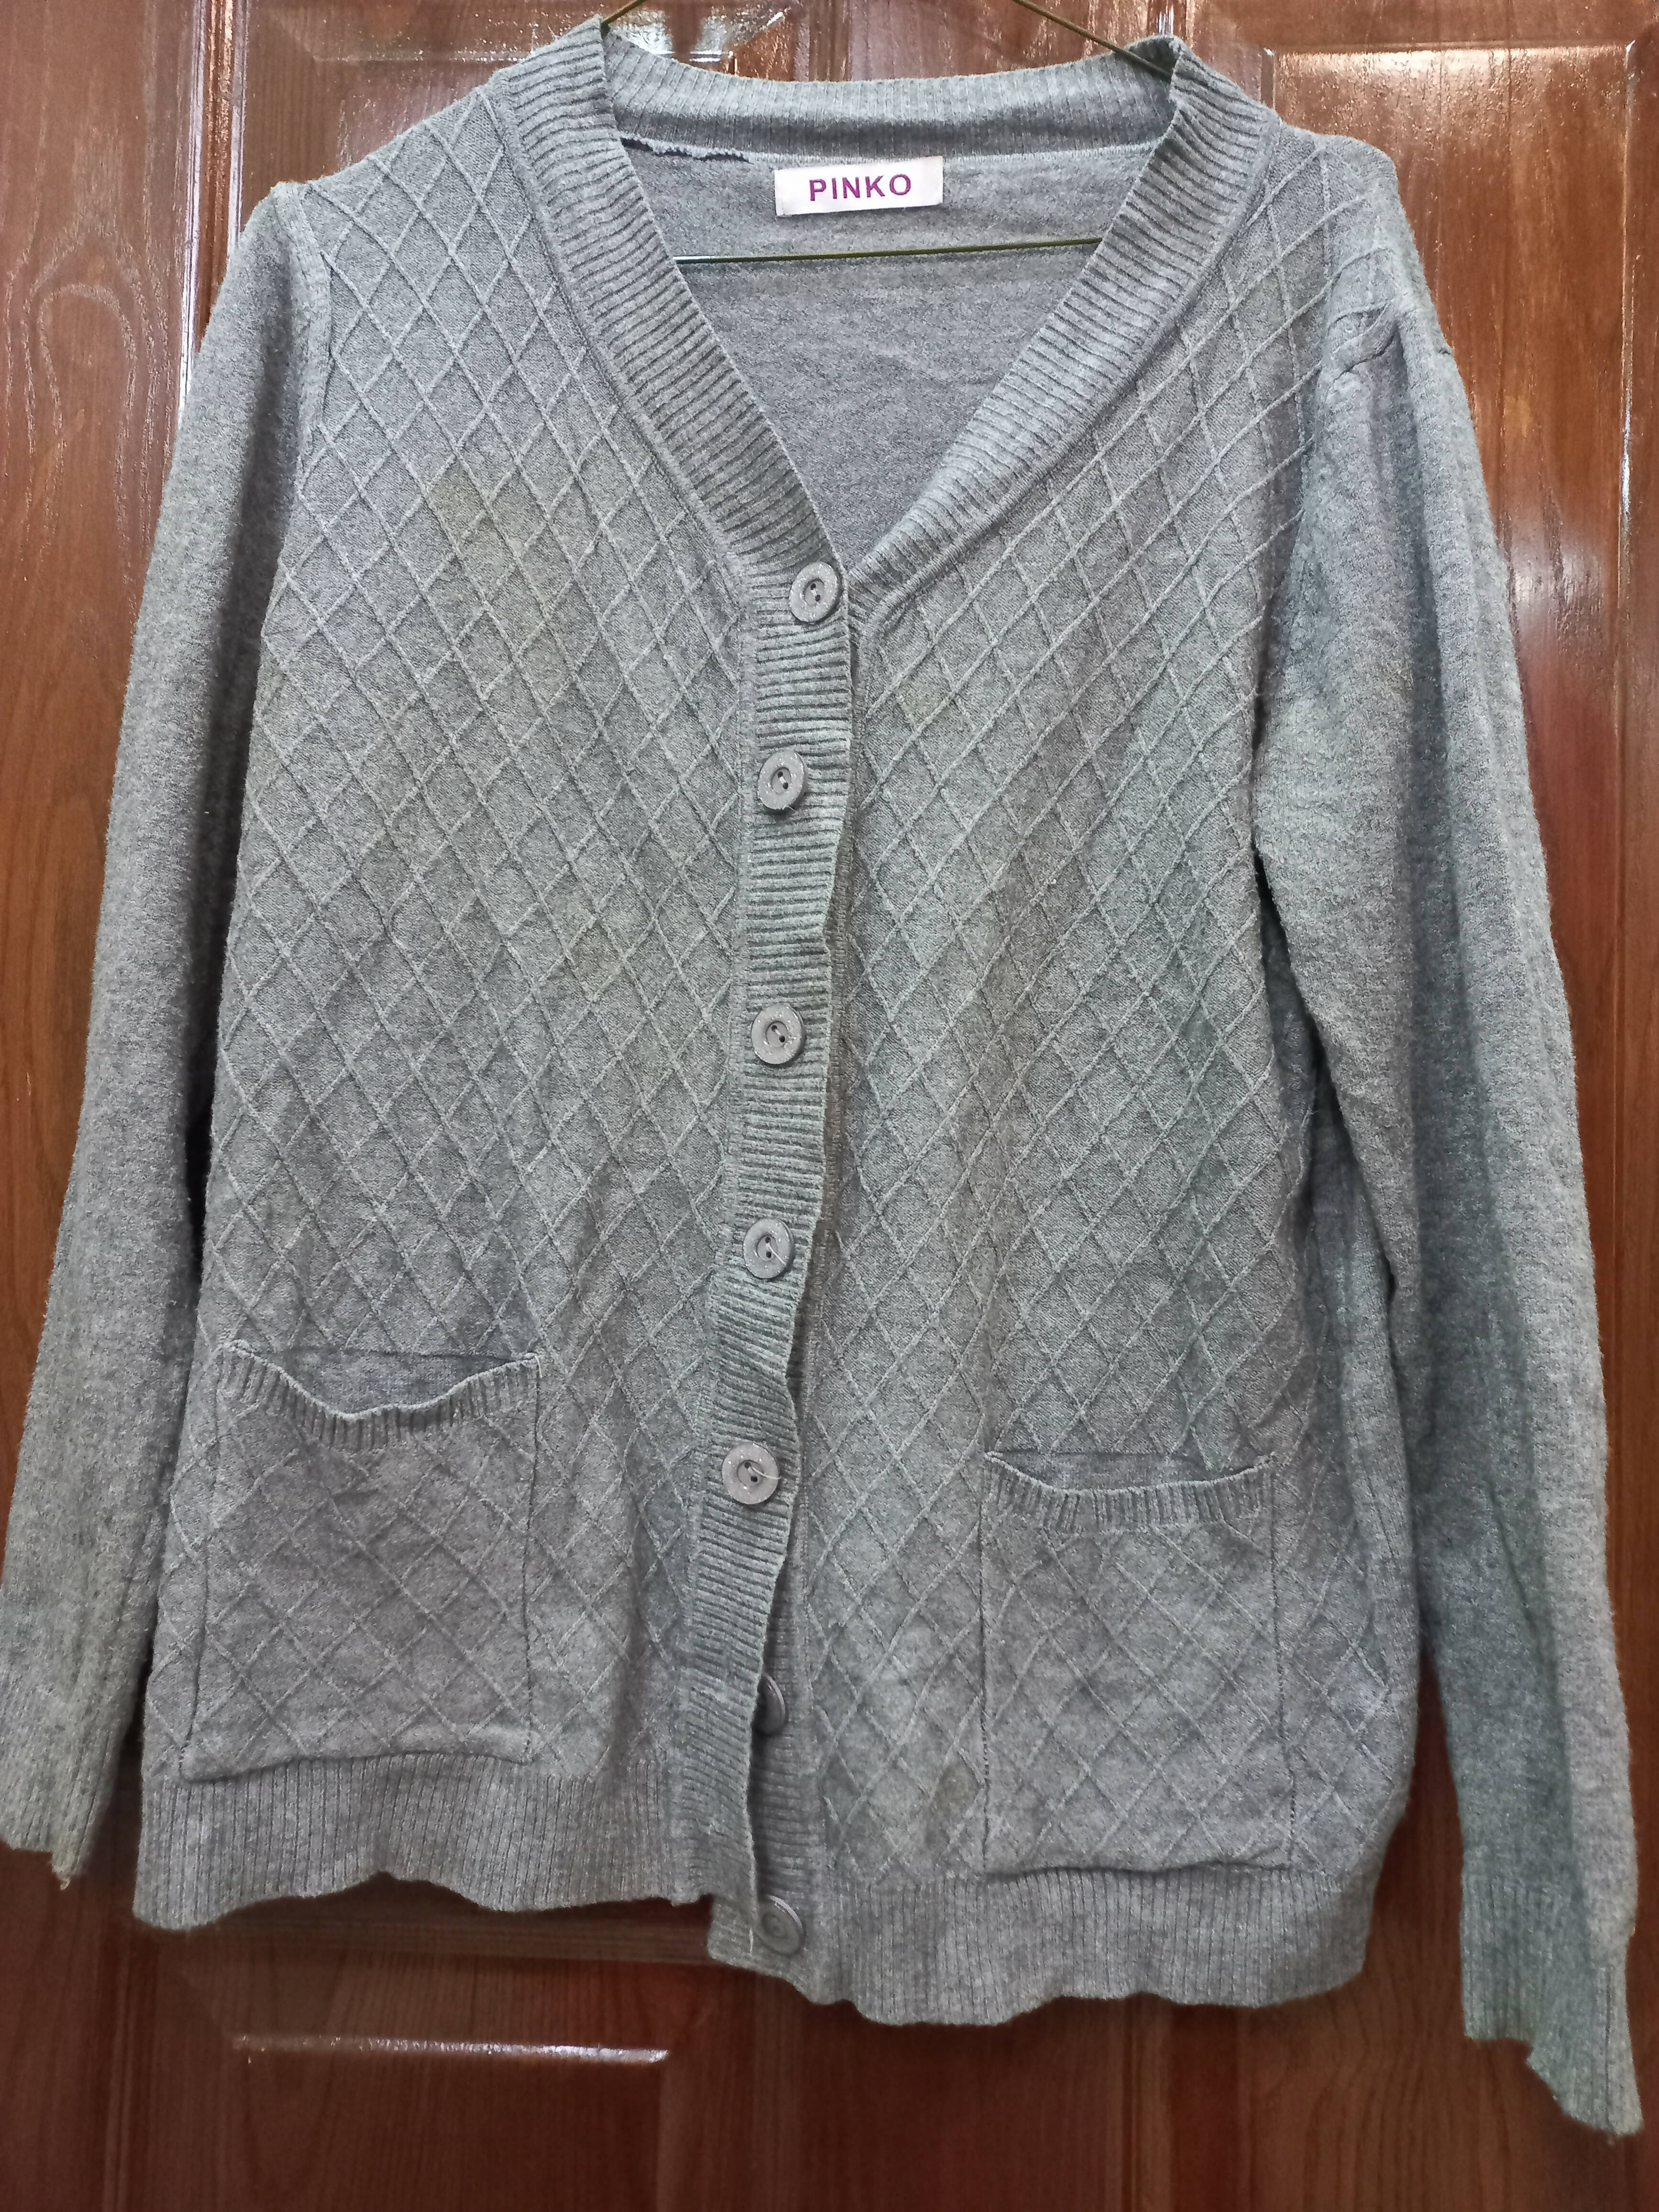 Grey Jersey Sweater | Women Sweaters & Jackets | Medium | Worn Once